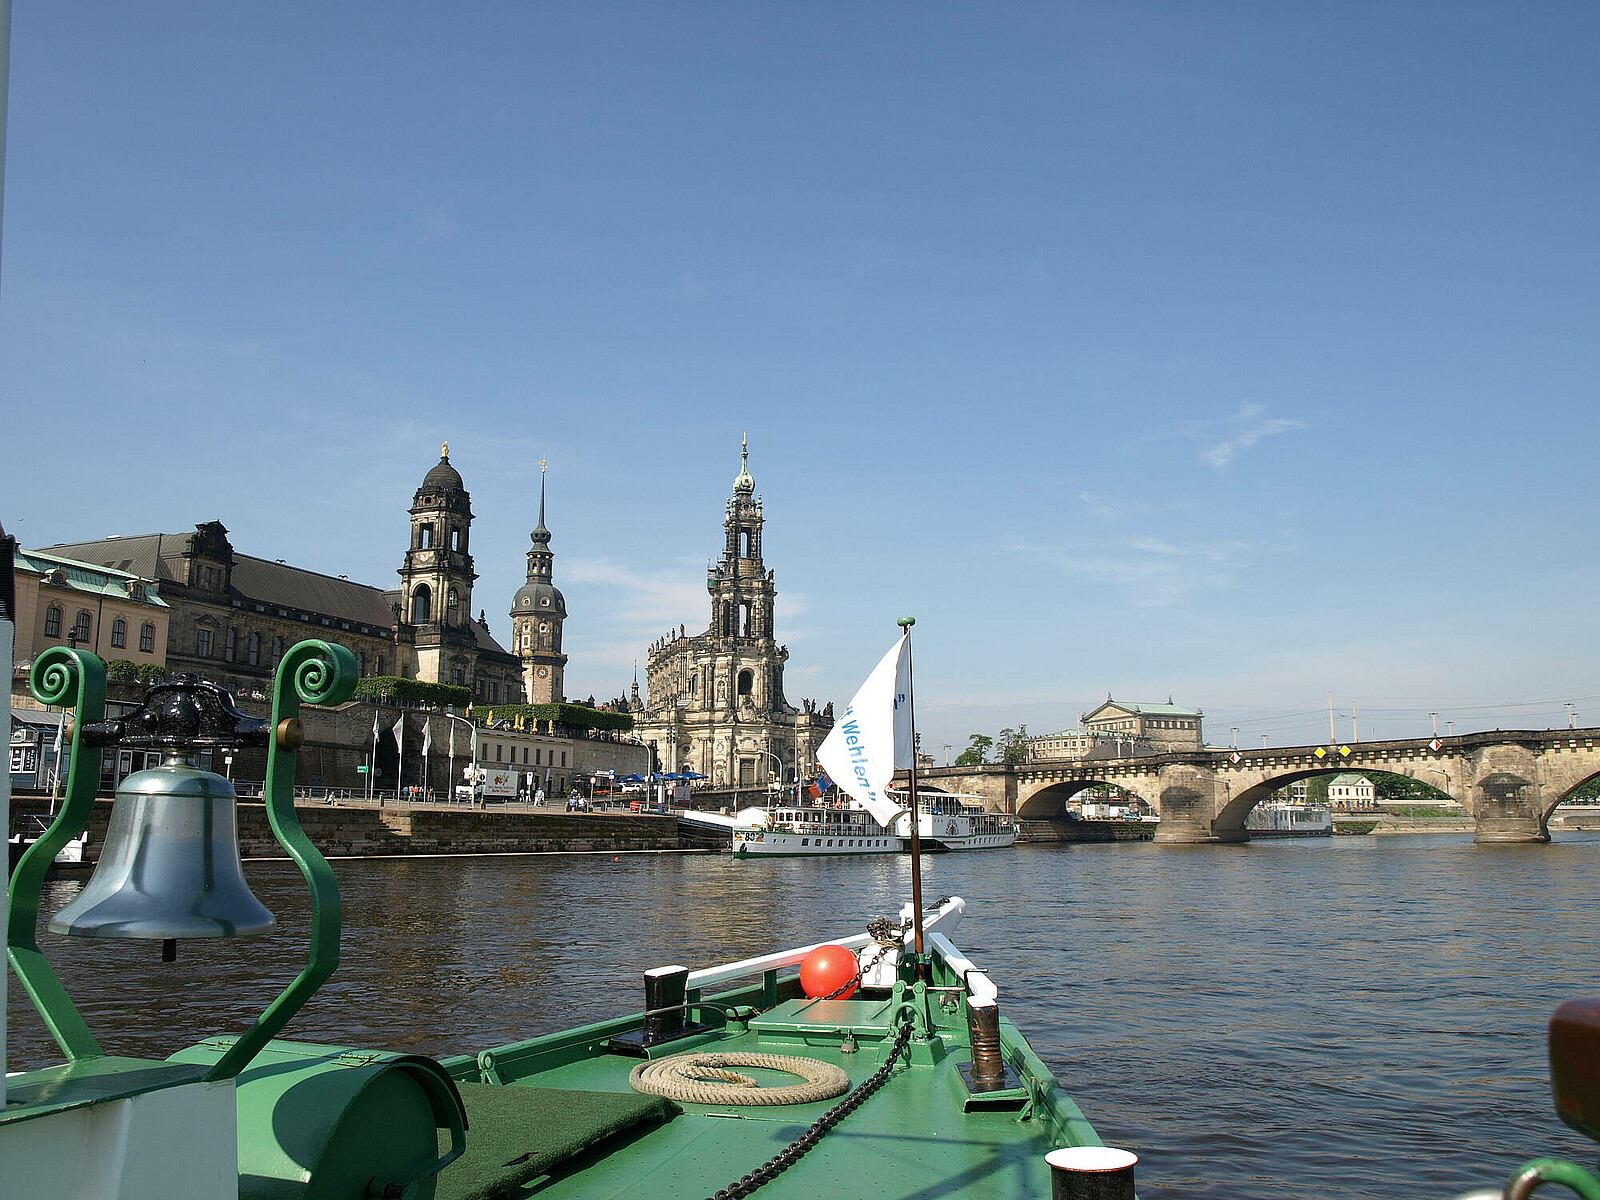 Erleben Sie die entschleunigende Wirkung einer entspannten Schifffahrt auf der Elbe und erkunden Sie unser schönes Dresden auch vom Wasser aus bei dieser anderen Art der Stadtrundfahrt durch Elbflorenz mit einem der ältesten Schaufelraddampfer der Welt.